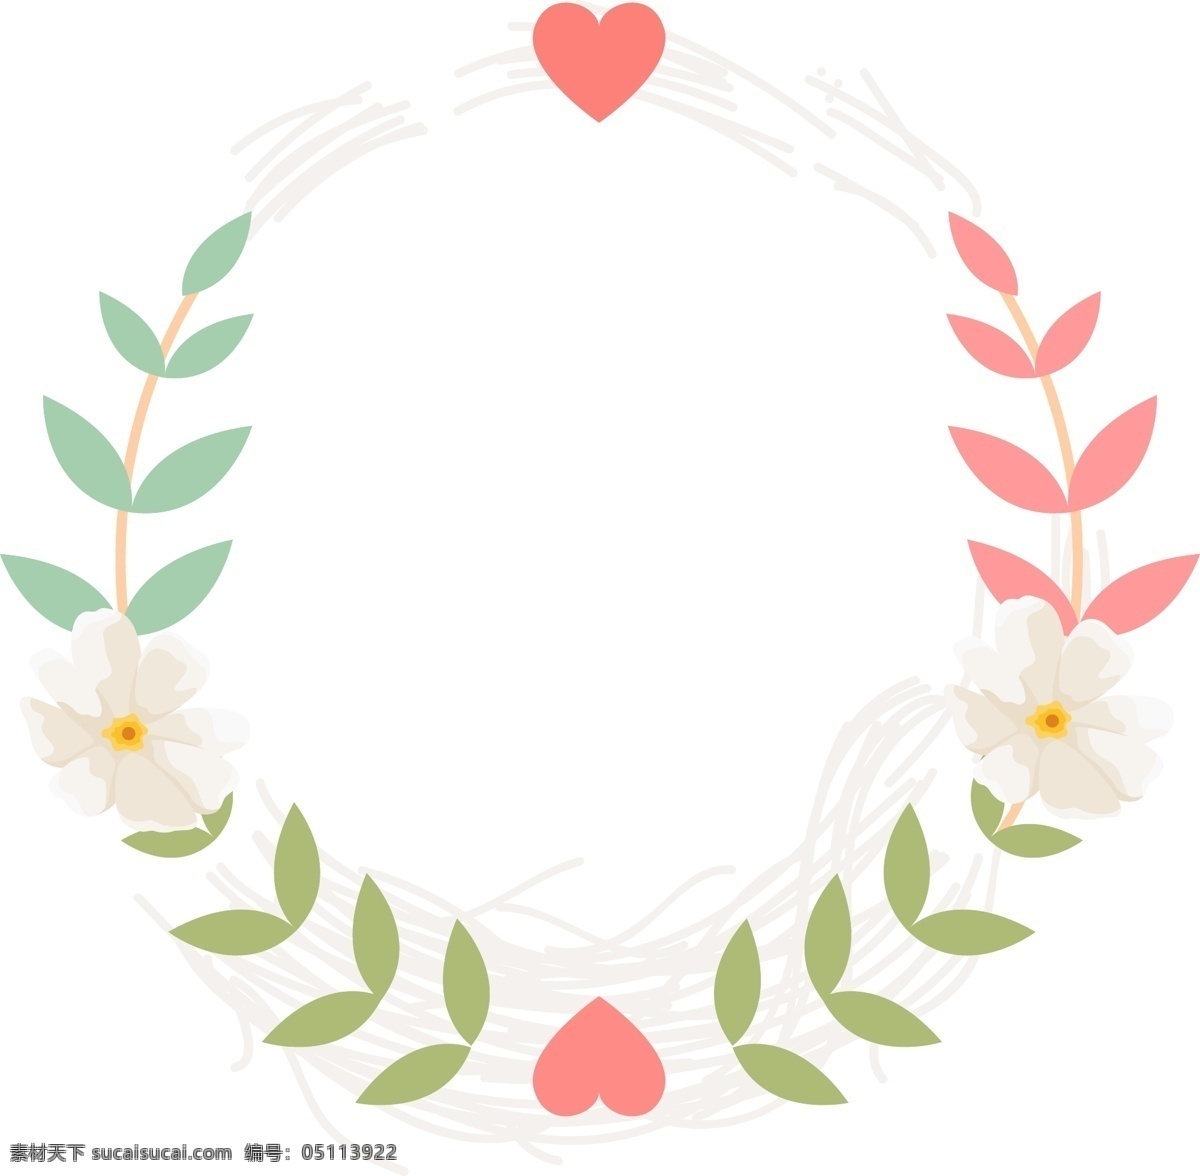 矢量 手绘 树叶 花朵 边框 绿色树叶 粉色树叶 蓝色树叶 红色爱心 爱情 白色花朵 婚礼